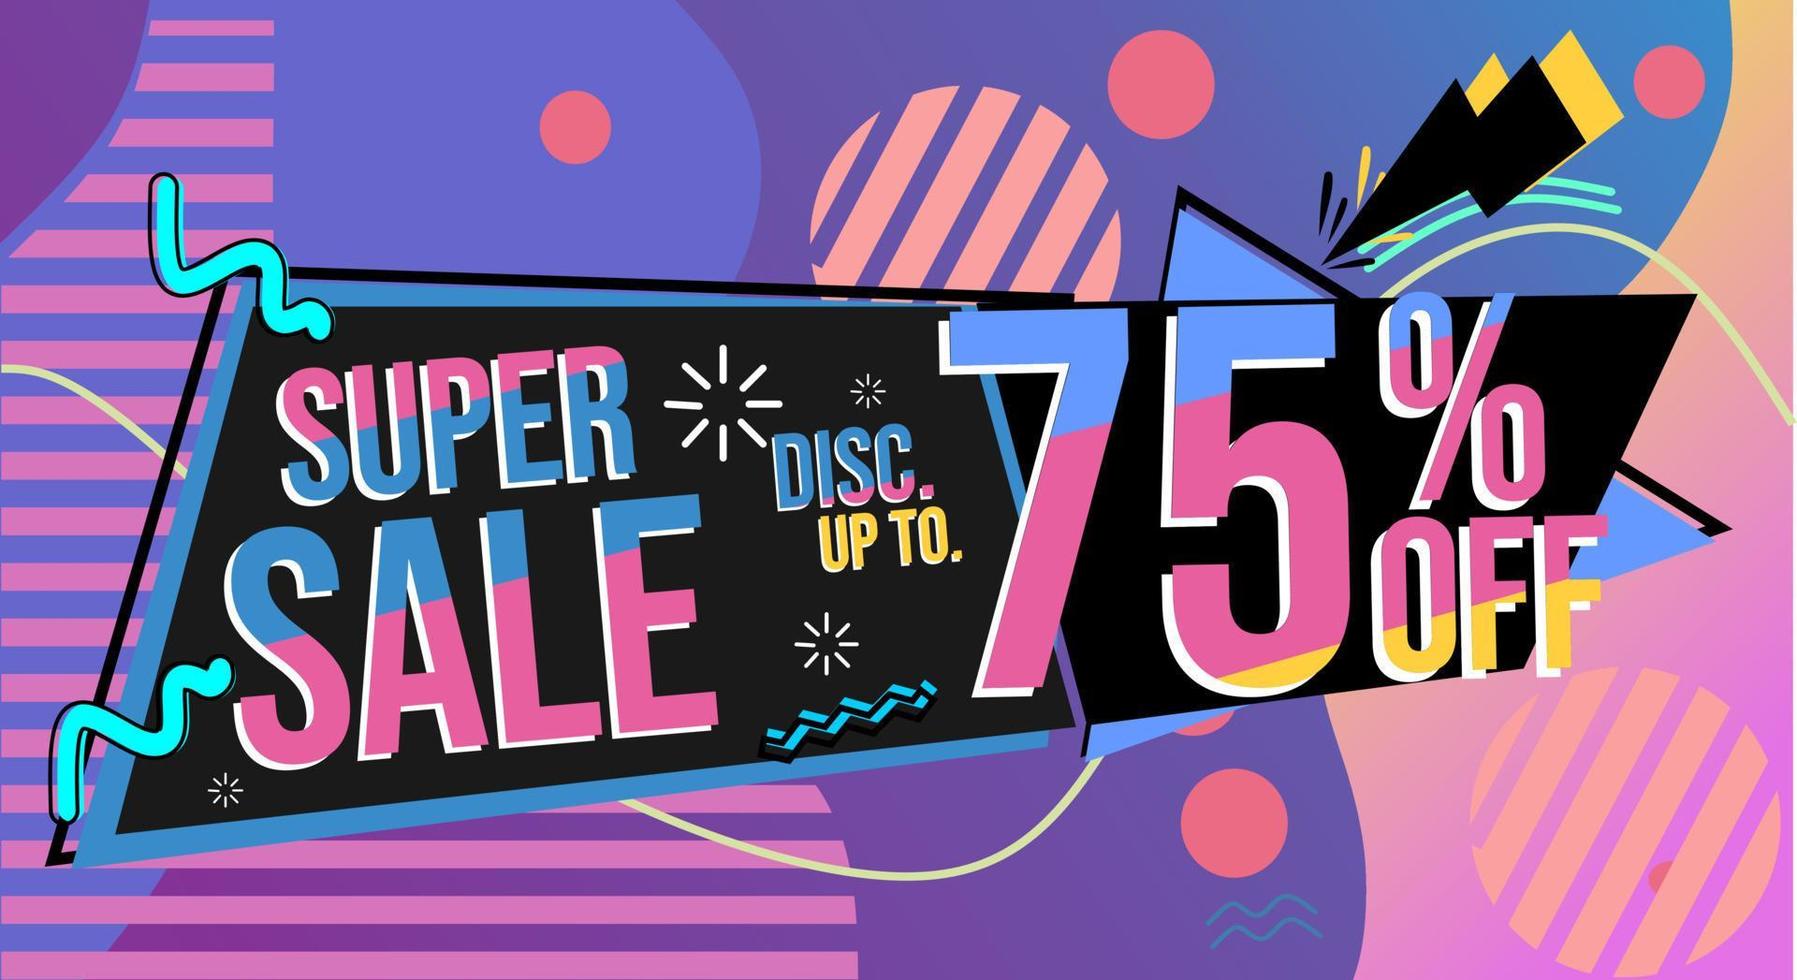 Super Sale Werbebanner im Memphis-Stil der 80er Jahre. farbenfrohes und fröhliches Hintergrunddesign vektor